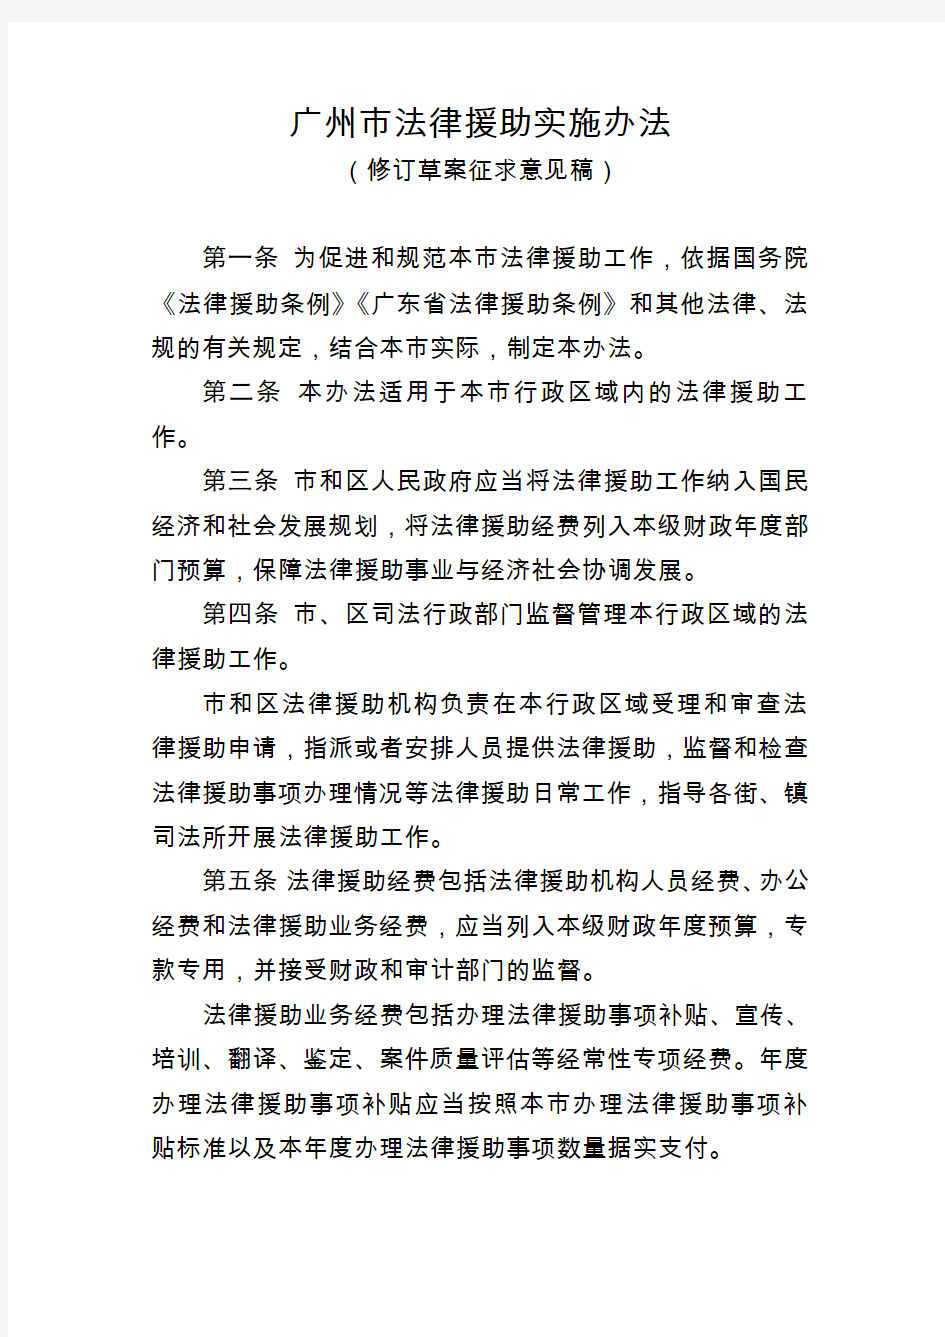 广州法律援助实施办法